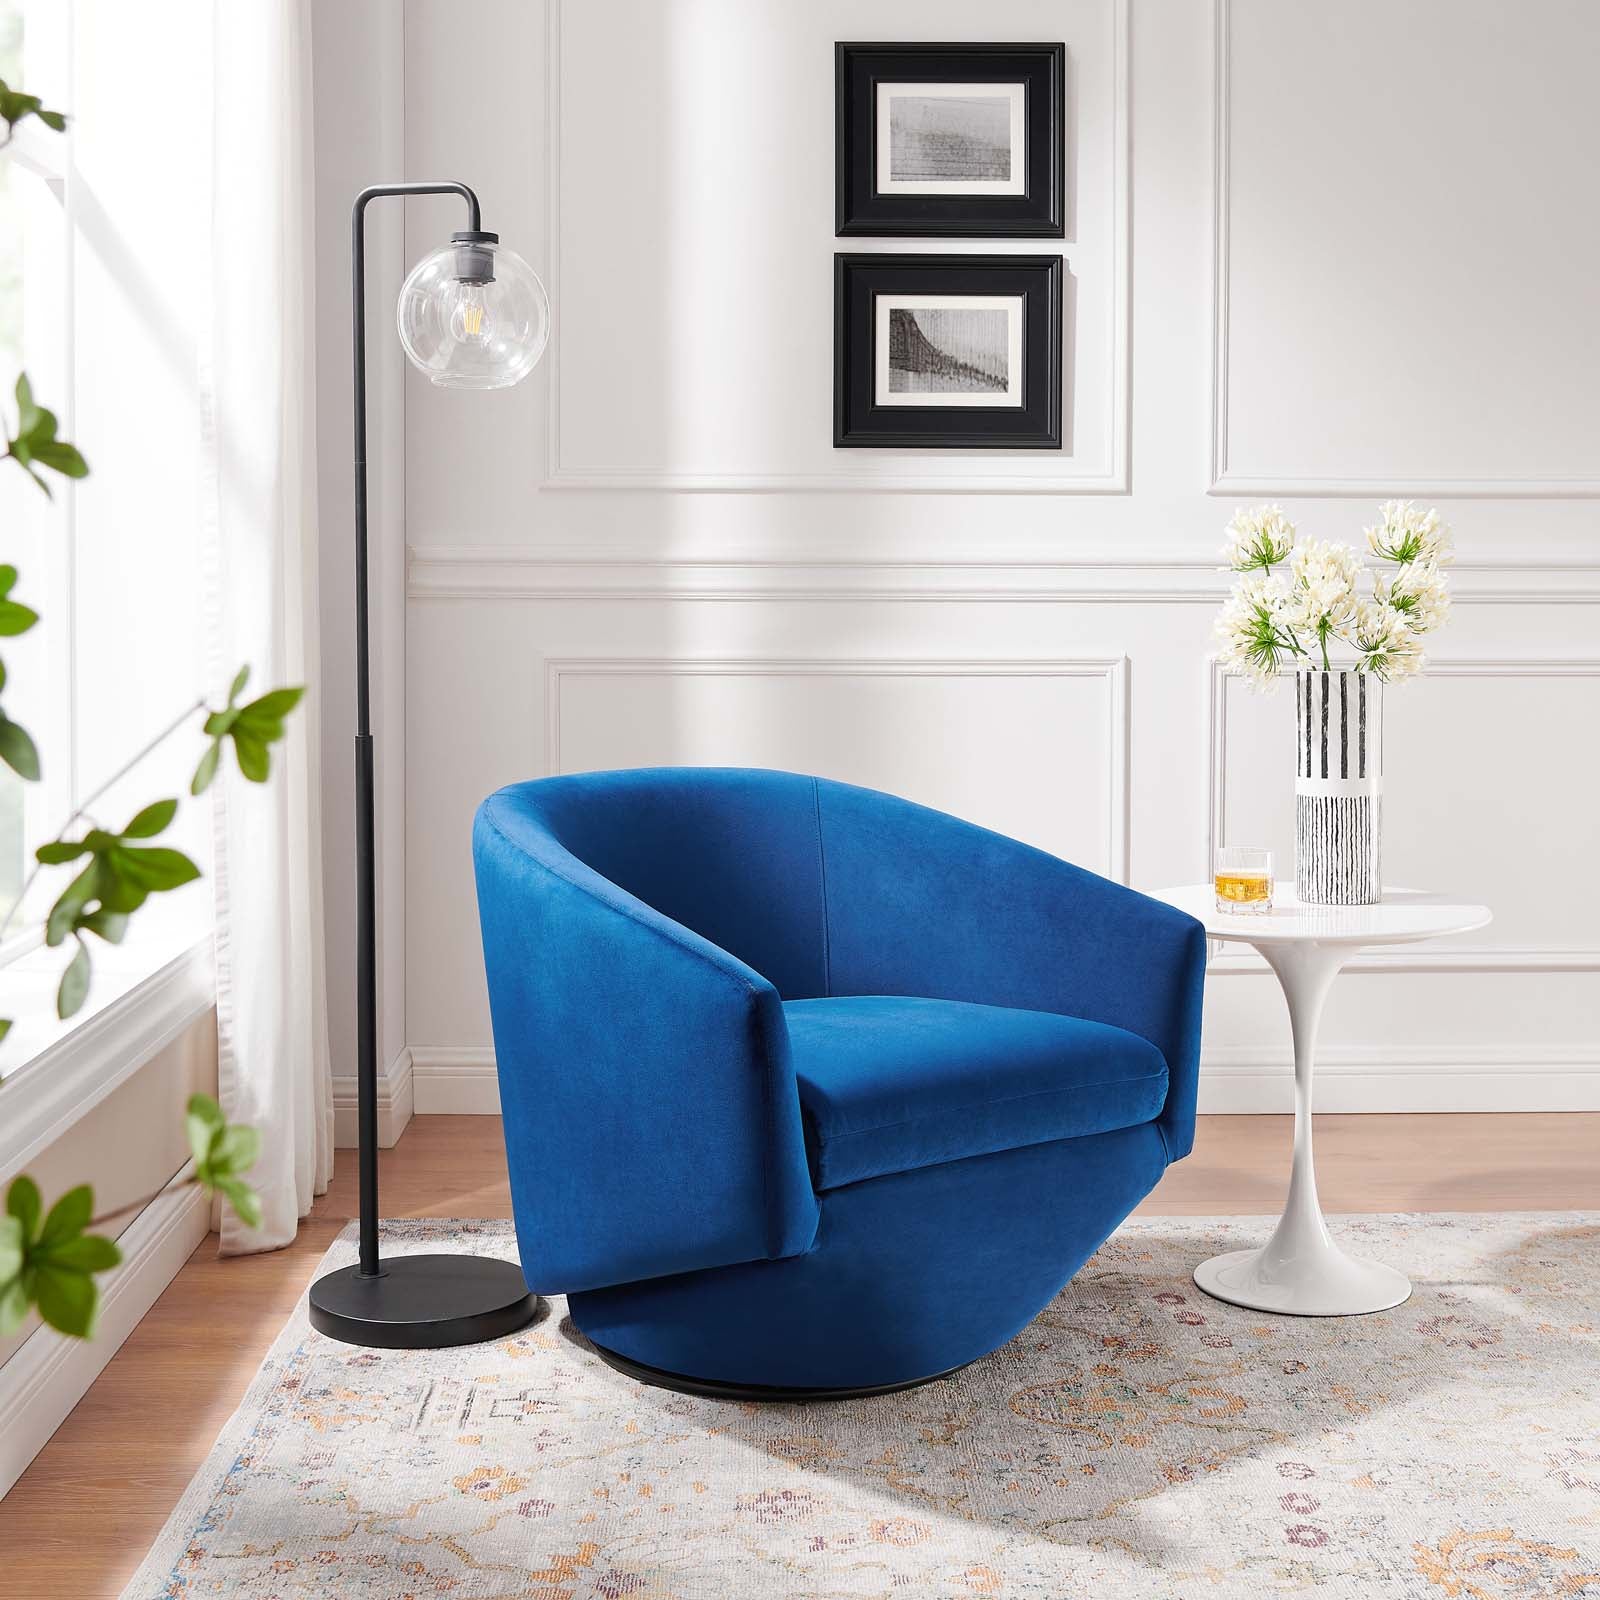 Series Performance Velvet Fabric Swivel Chair - East Shore Modern Home Furnishings